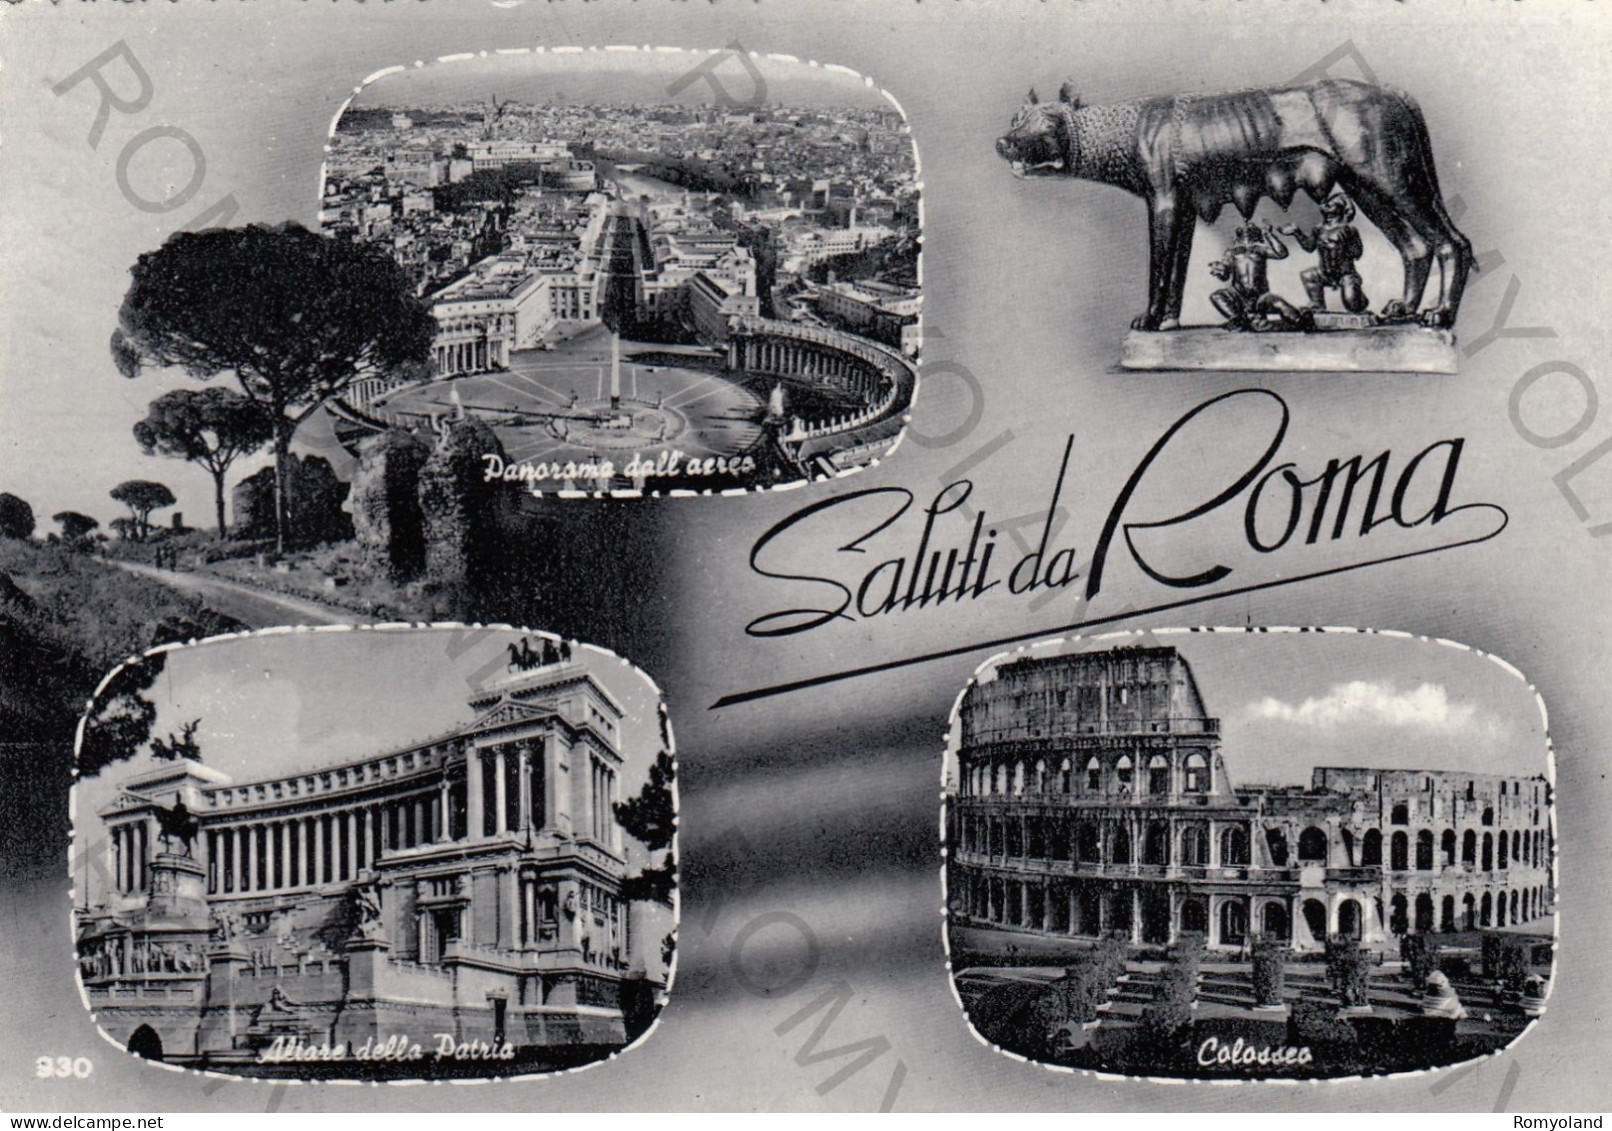 CARTOLINA  B7 ROMA,LAZIO-SALUTI DA ROMA-ALTARE DELLA PATRIA-COLOSSEO-PANORAMA DALL'AEREO-STORIA,CULTURA,VIAGGIATA 1965 - Coliseo